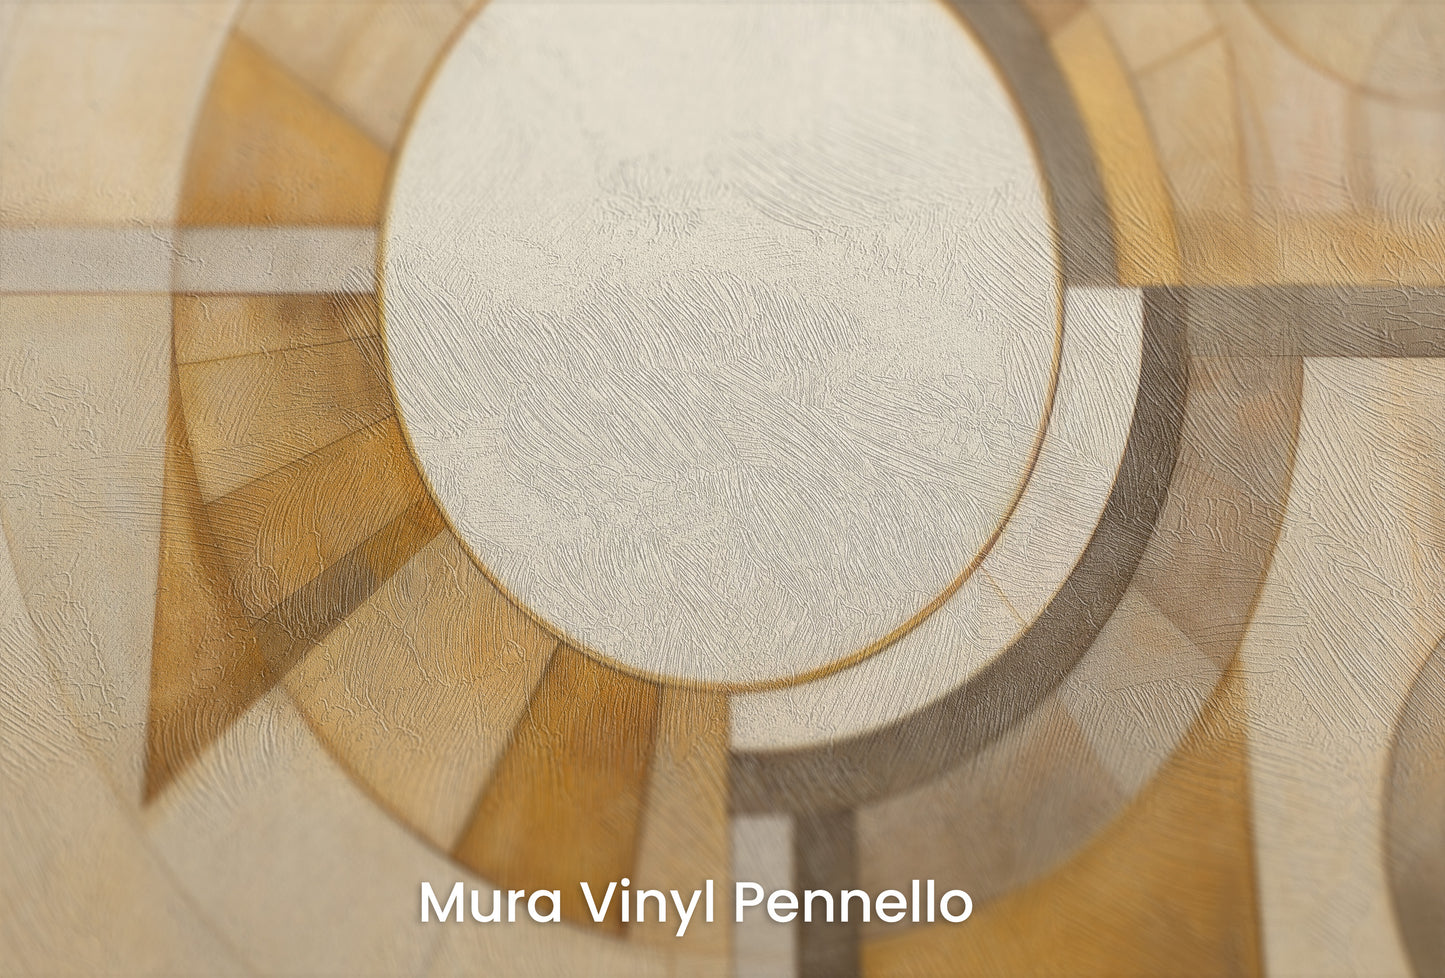 Zbliżenie na artystyczną fototapetę o nazwie ASTRAL CIRCULARITY na podłożu Mura Vinyl Pennello - faktura pociągnięć pędzla malarskiego.